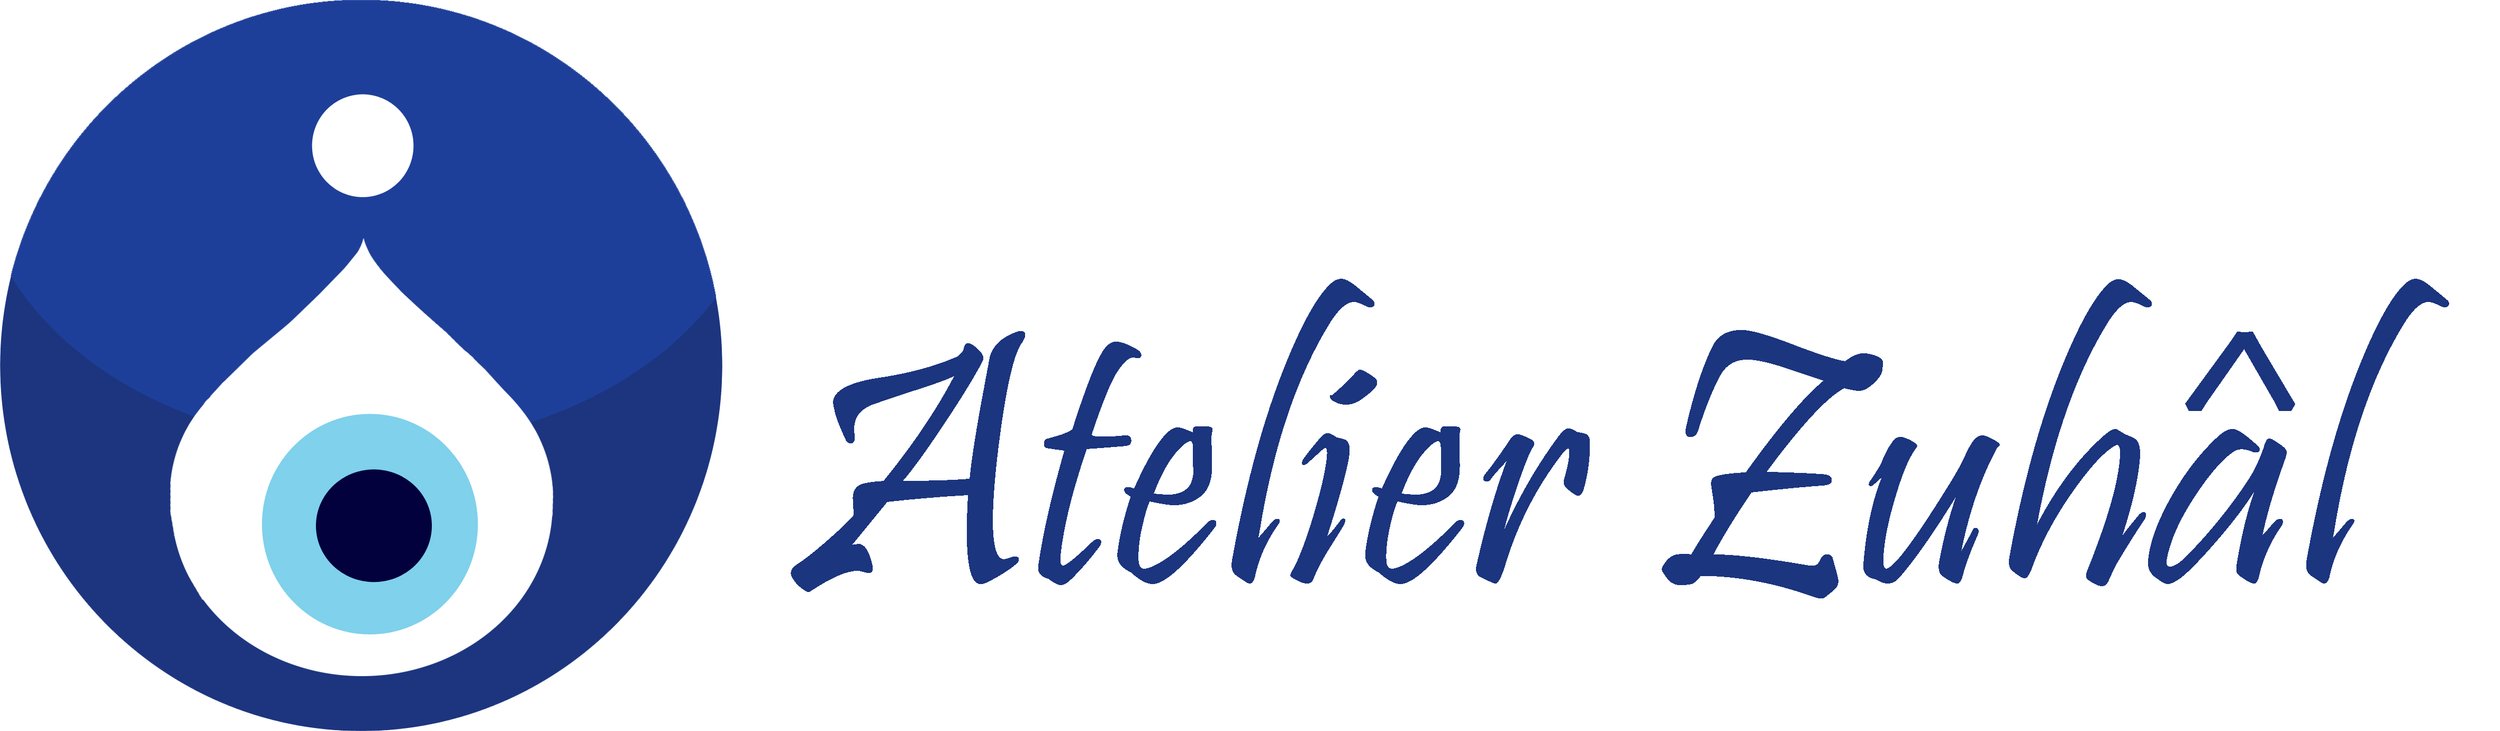 Atelier Zuhal logo  (1).jpg